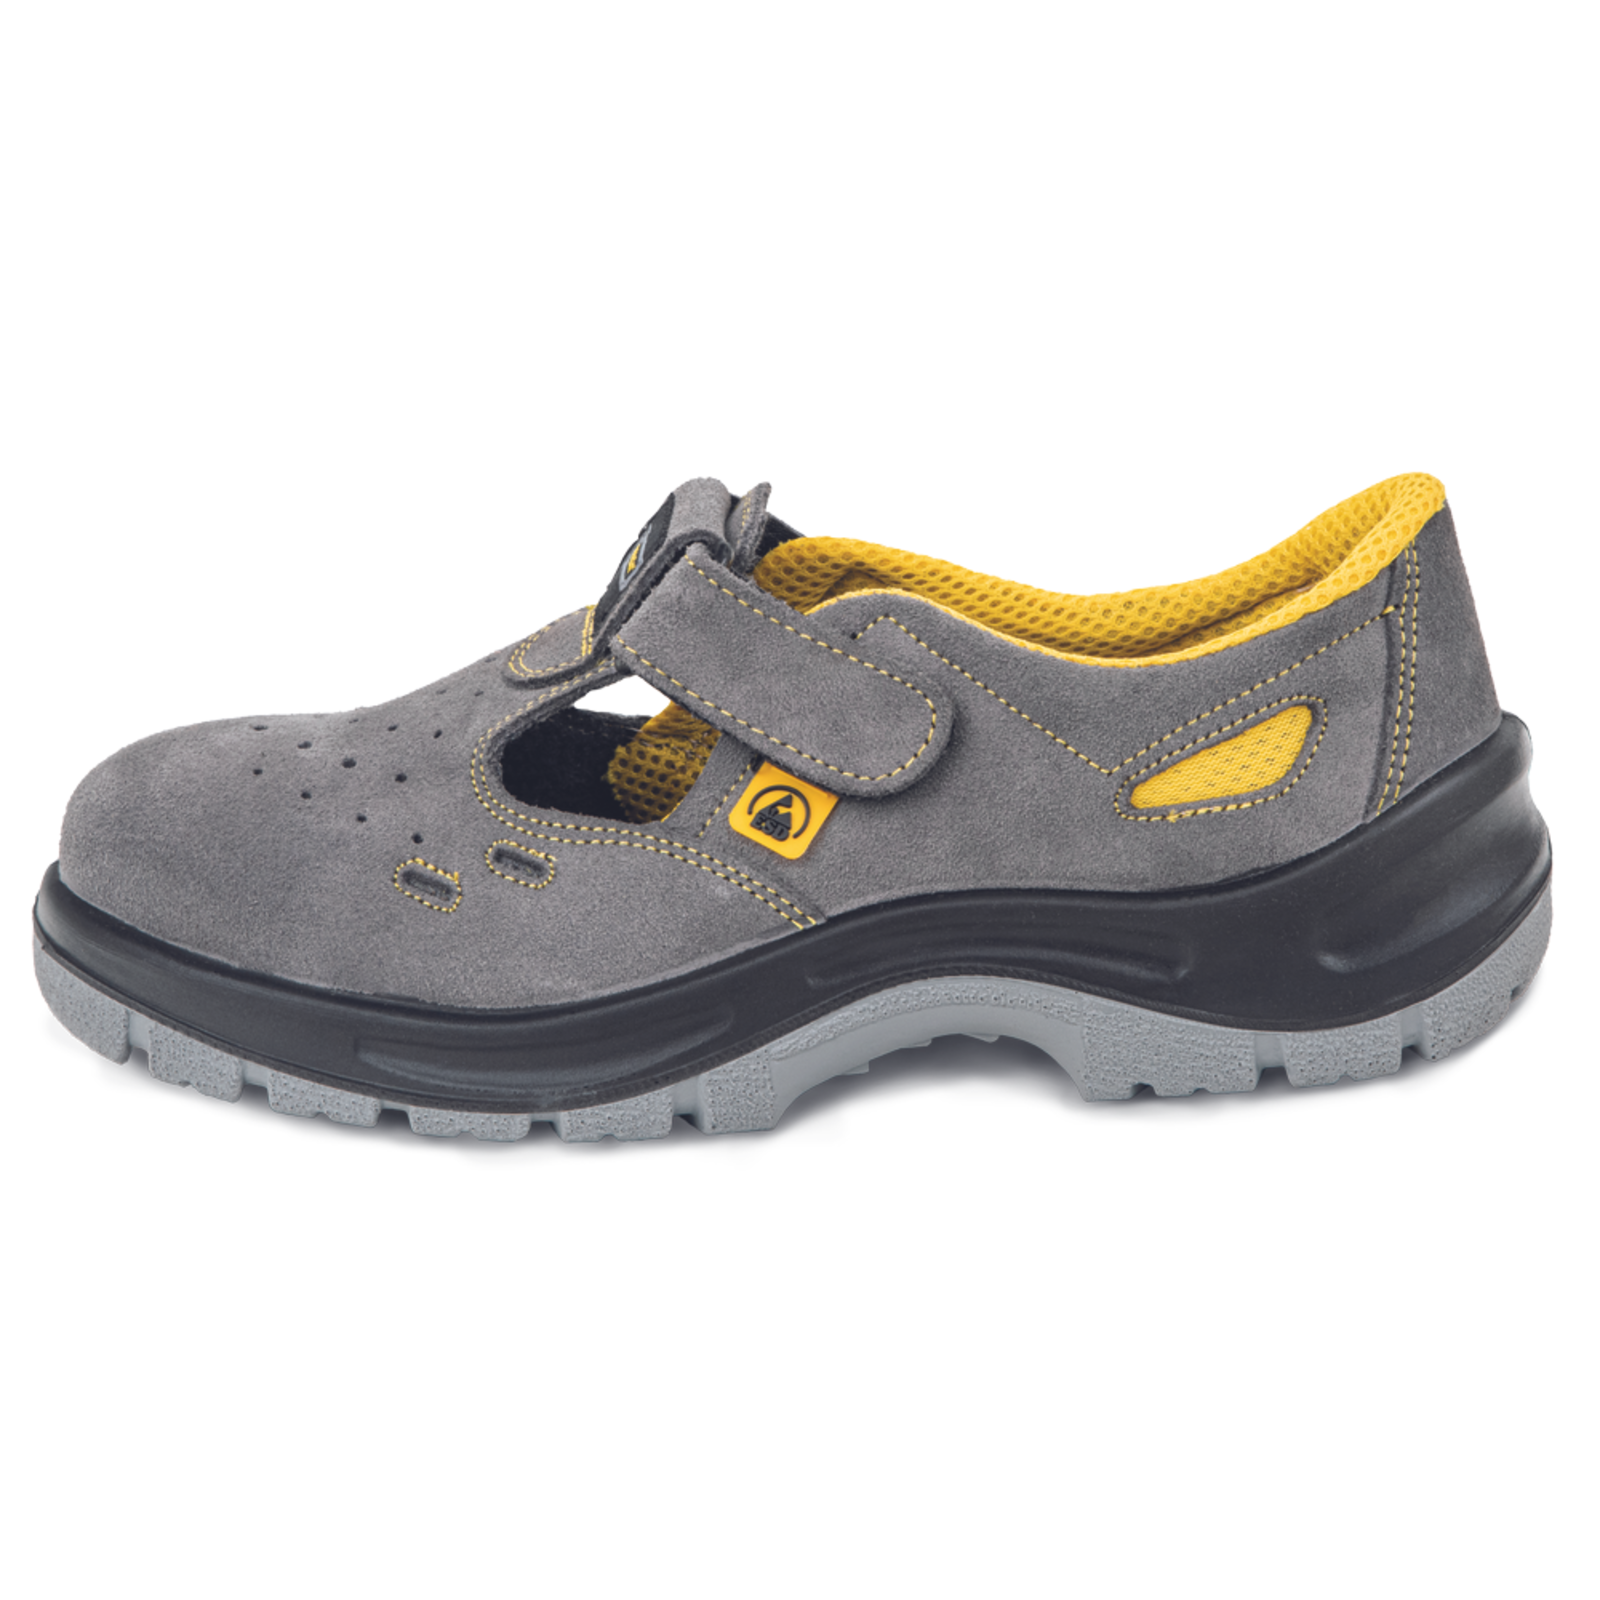 Pracovné bezpečnostné sandále Panda Selma MF ESD S1P SRC - veľkosť: 38, farba: sivá/žltá